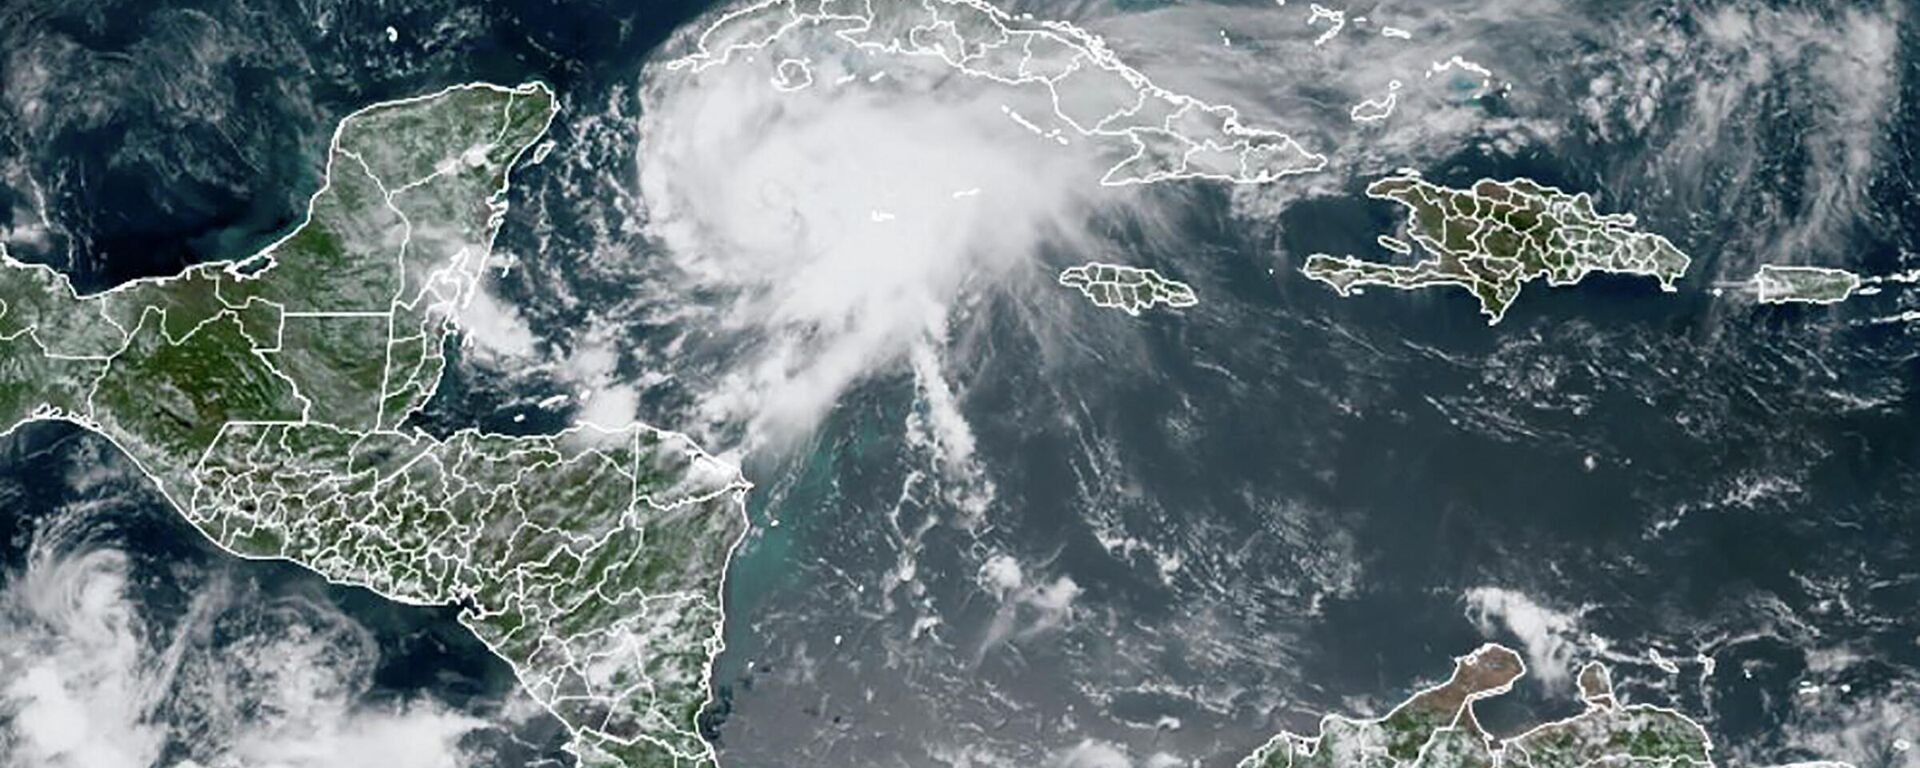 El huracán Grace se acerca a las costas de la península Yucatán, México - Sputnik Mundo, 1920, 19.08.2021